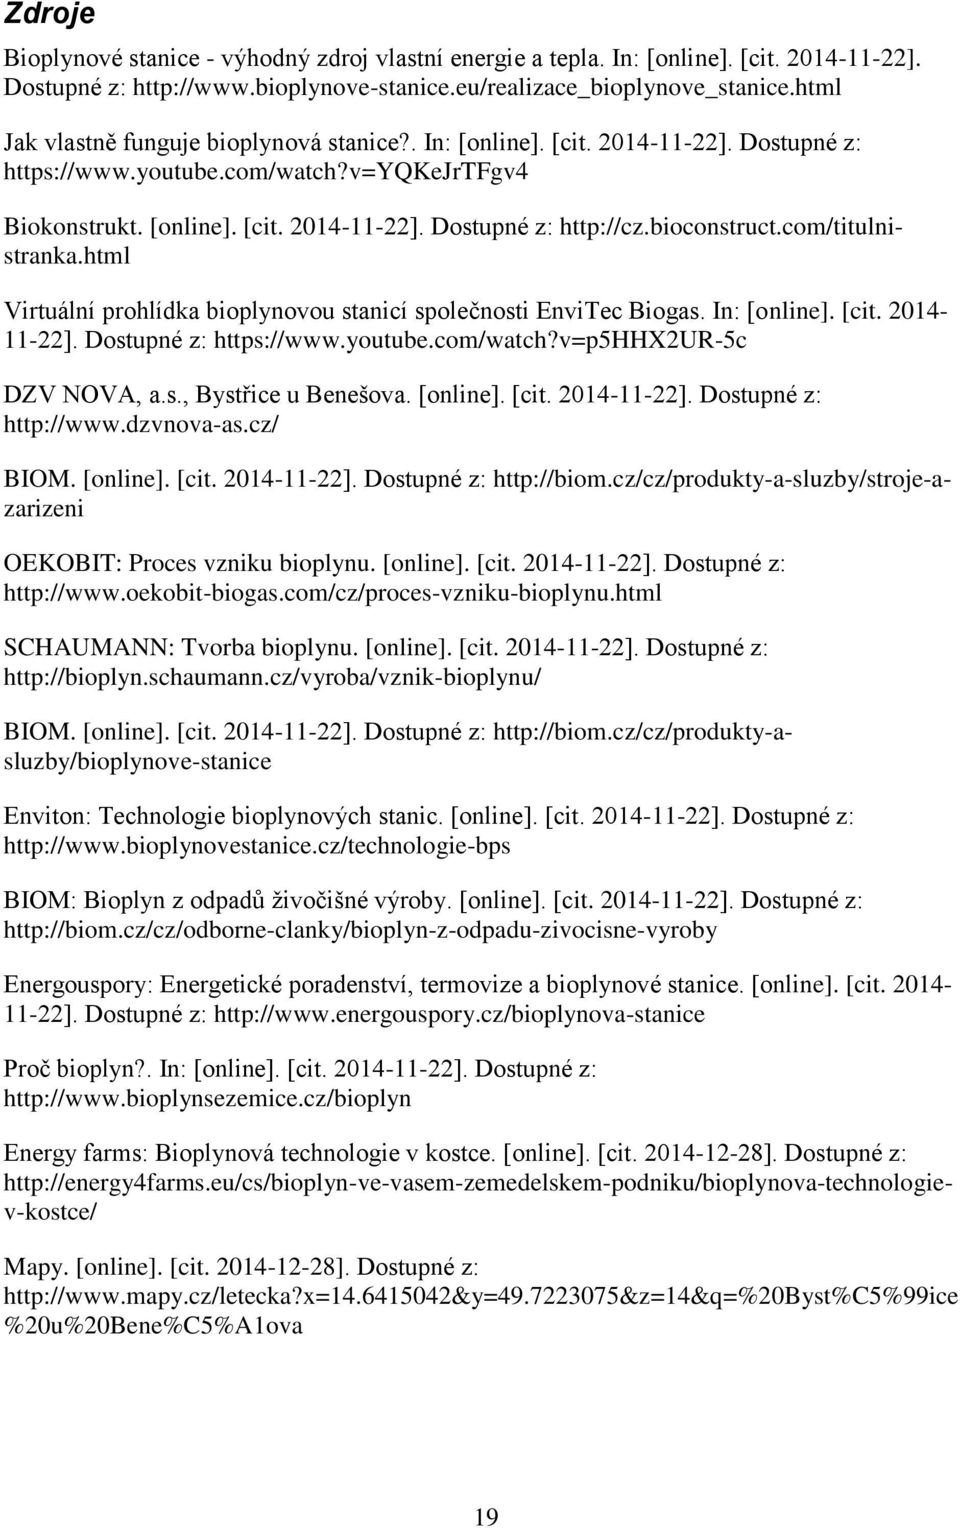 bioconstruct.com/titulnistranka.html Virtuální prohlídka bioplynovou stanicí společnosti EnviTec Biogas. In: [online]. [cit. 2014-11-22]. Dostupné z: https://www.youtube.com/watch?